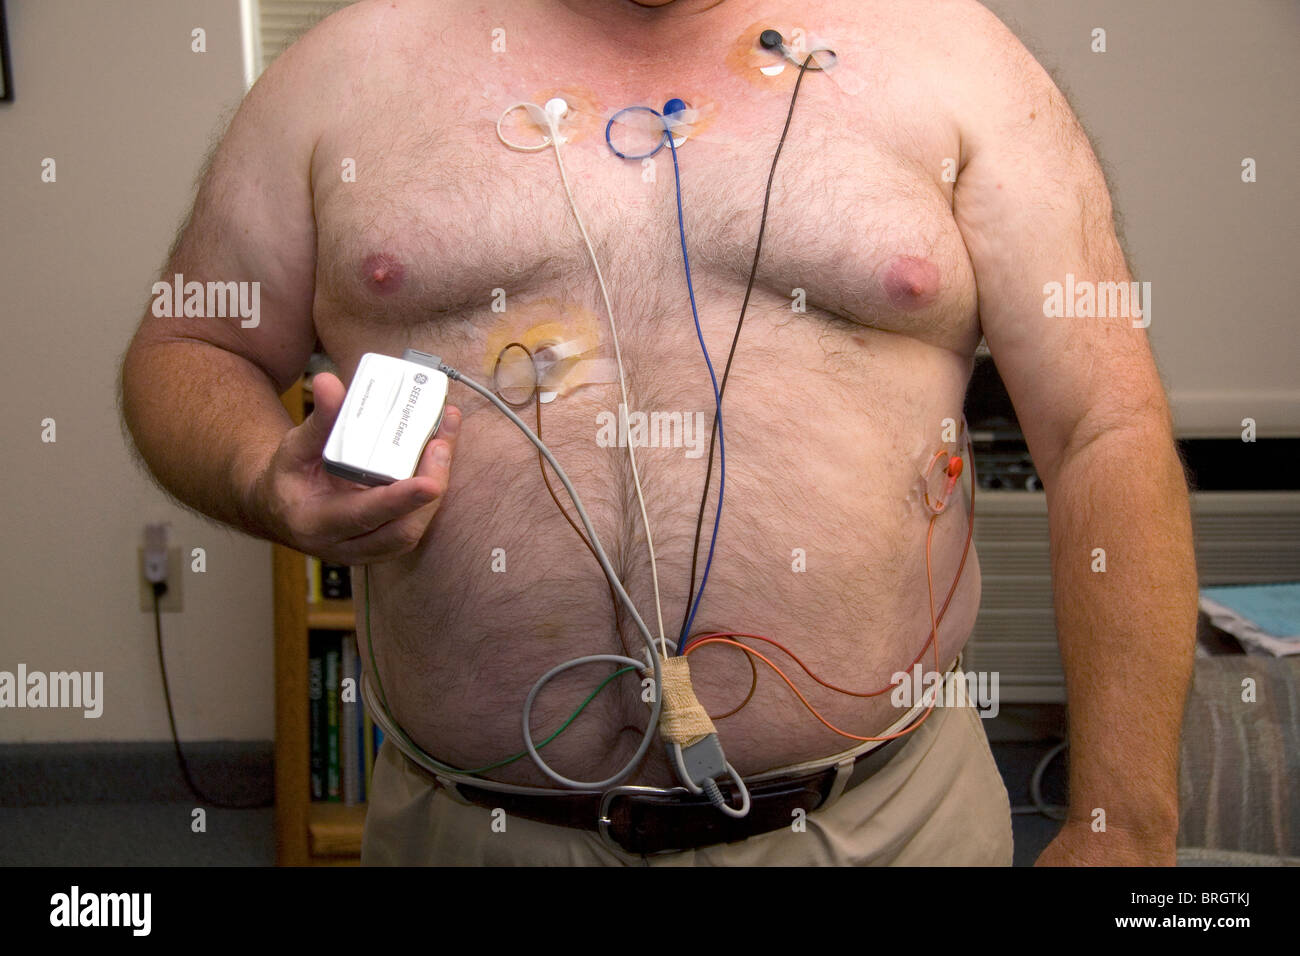 Amerikanische Mann trägt einen Holter-Monitor zur Überwachung der Herz für Herzrhythmusstörungen eingesetzt. HERR Stockfoto